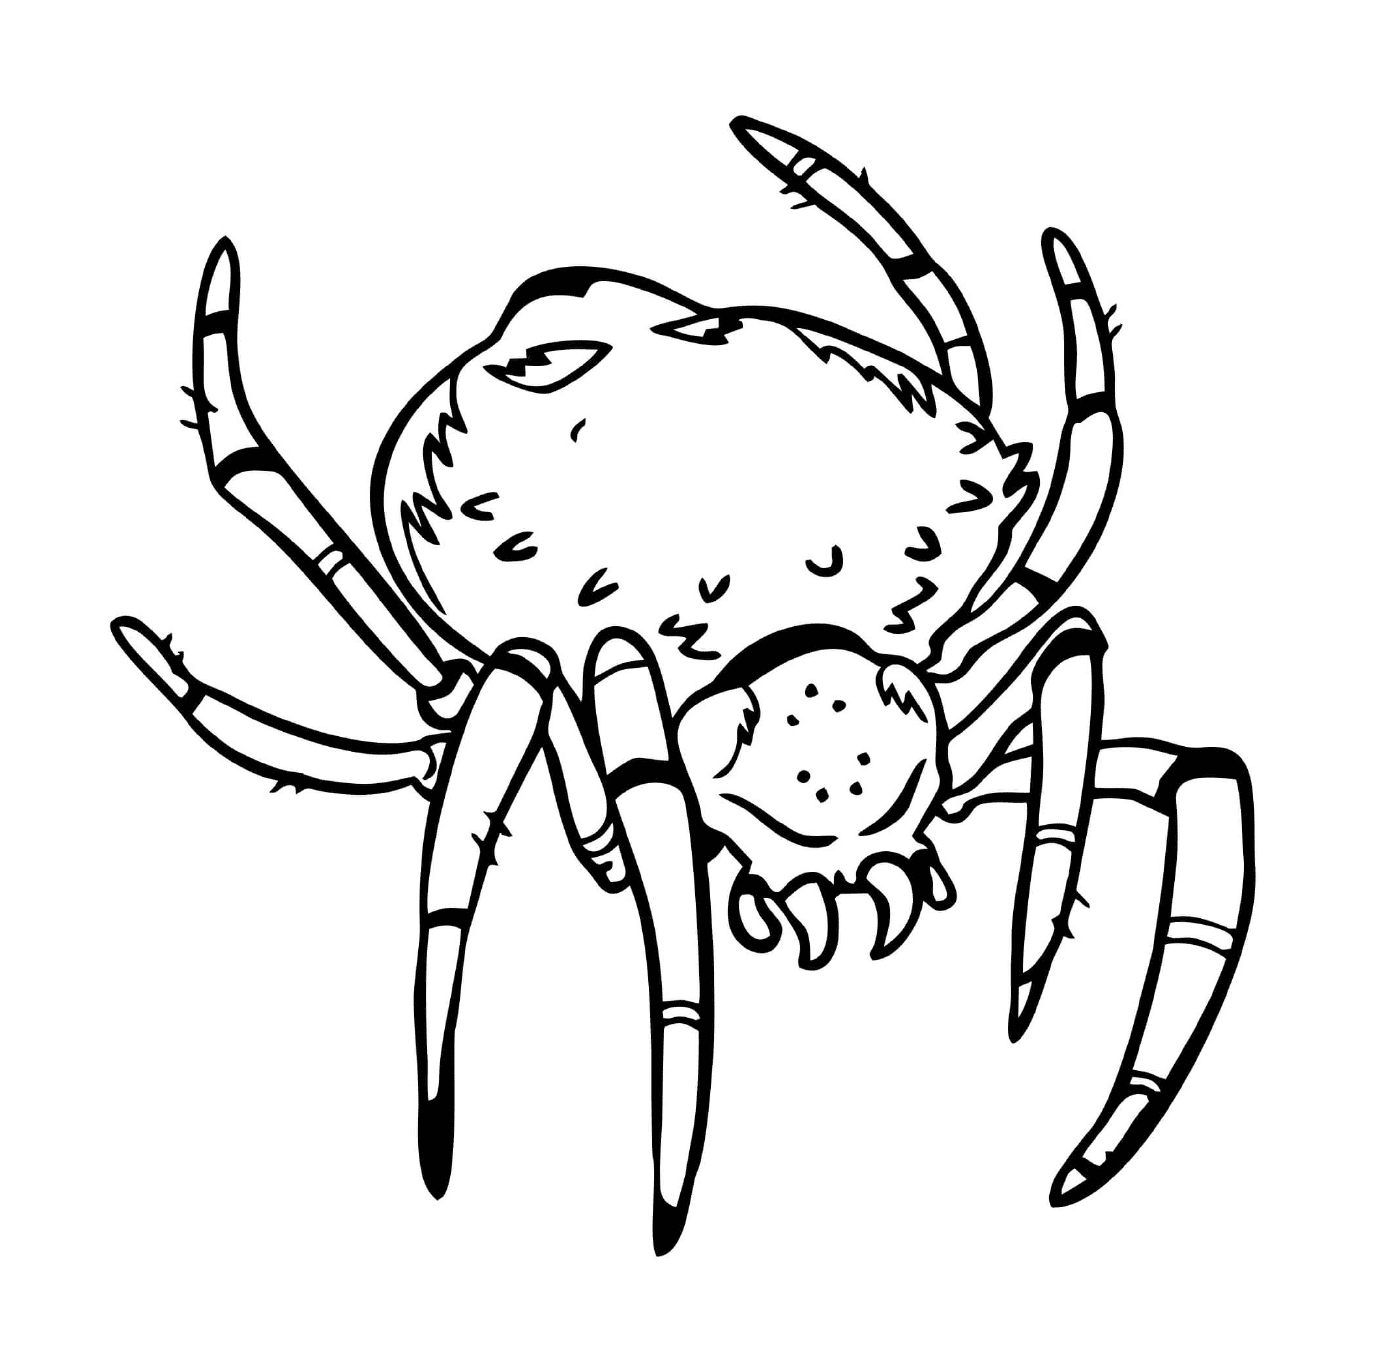  一只有大身材的可怕的蜘蛛 